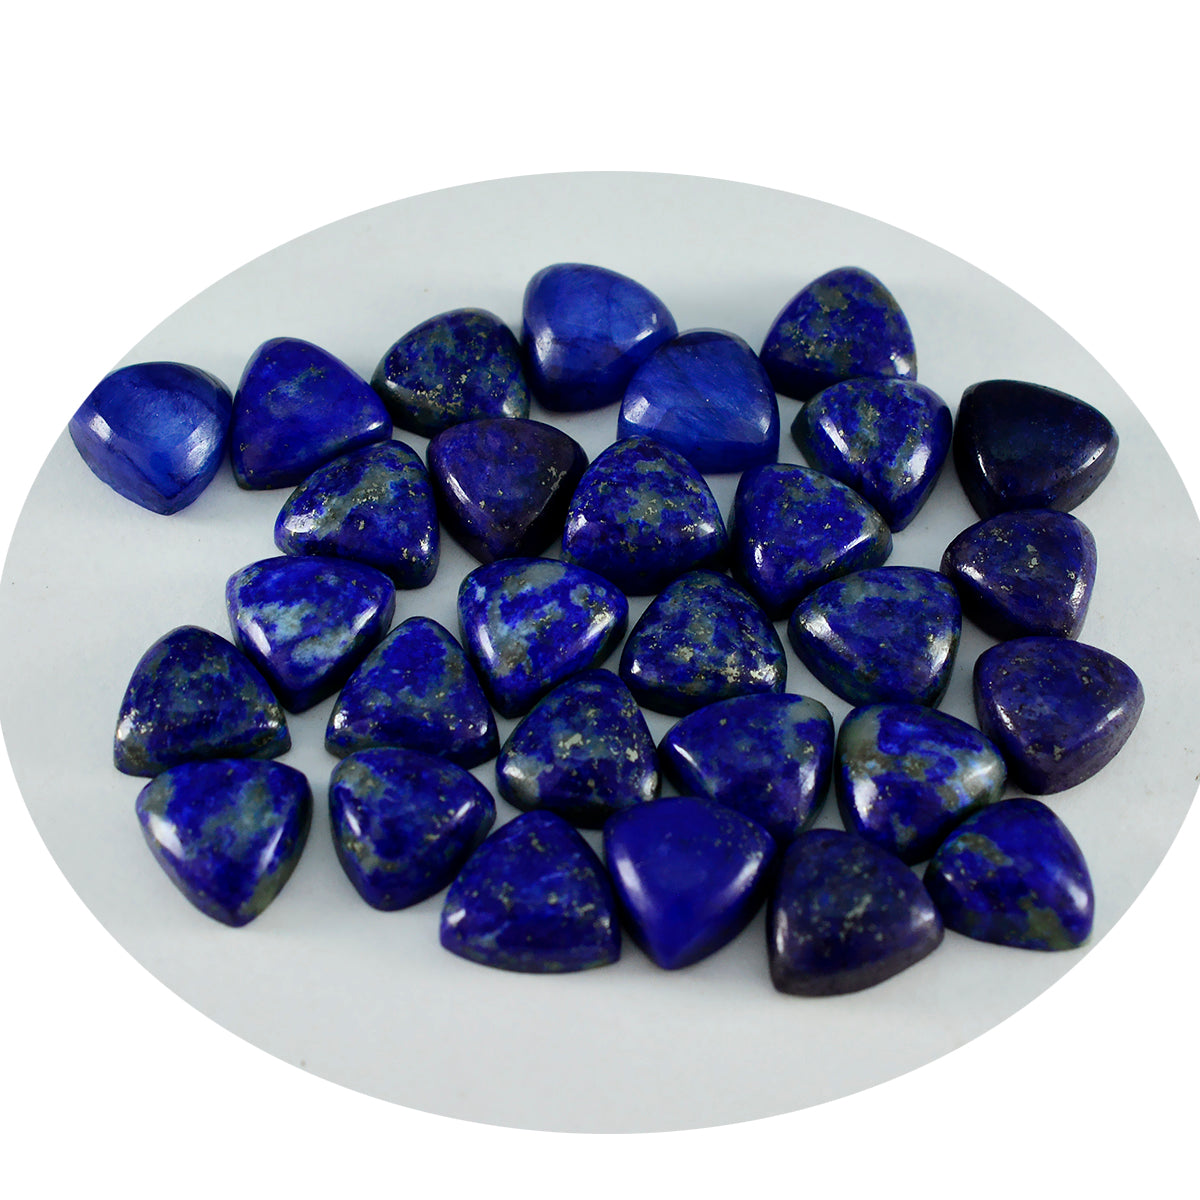 Riyogems – cabochon lapis-lazuli bleu, 6x6mm, en forme de trillion, pierres précieuses en vrac de belle qualité, 1 pièce